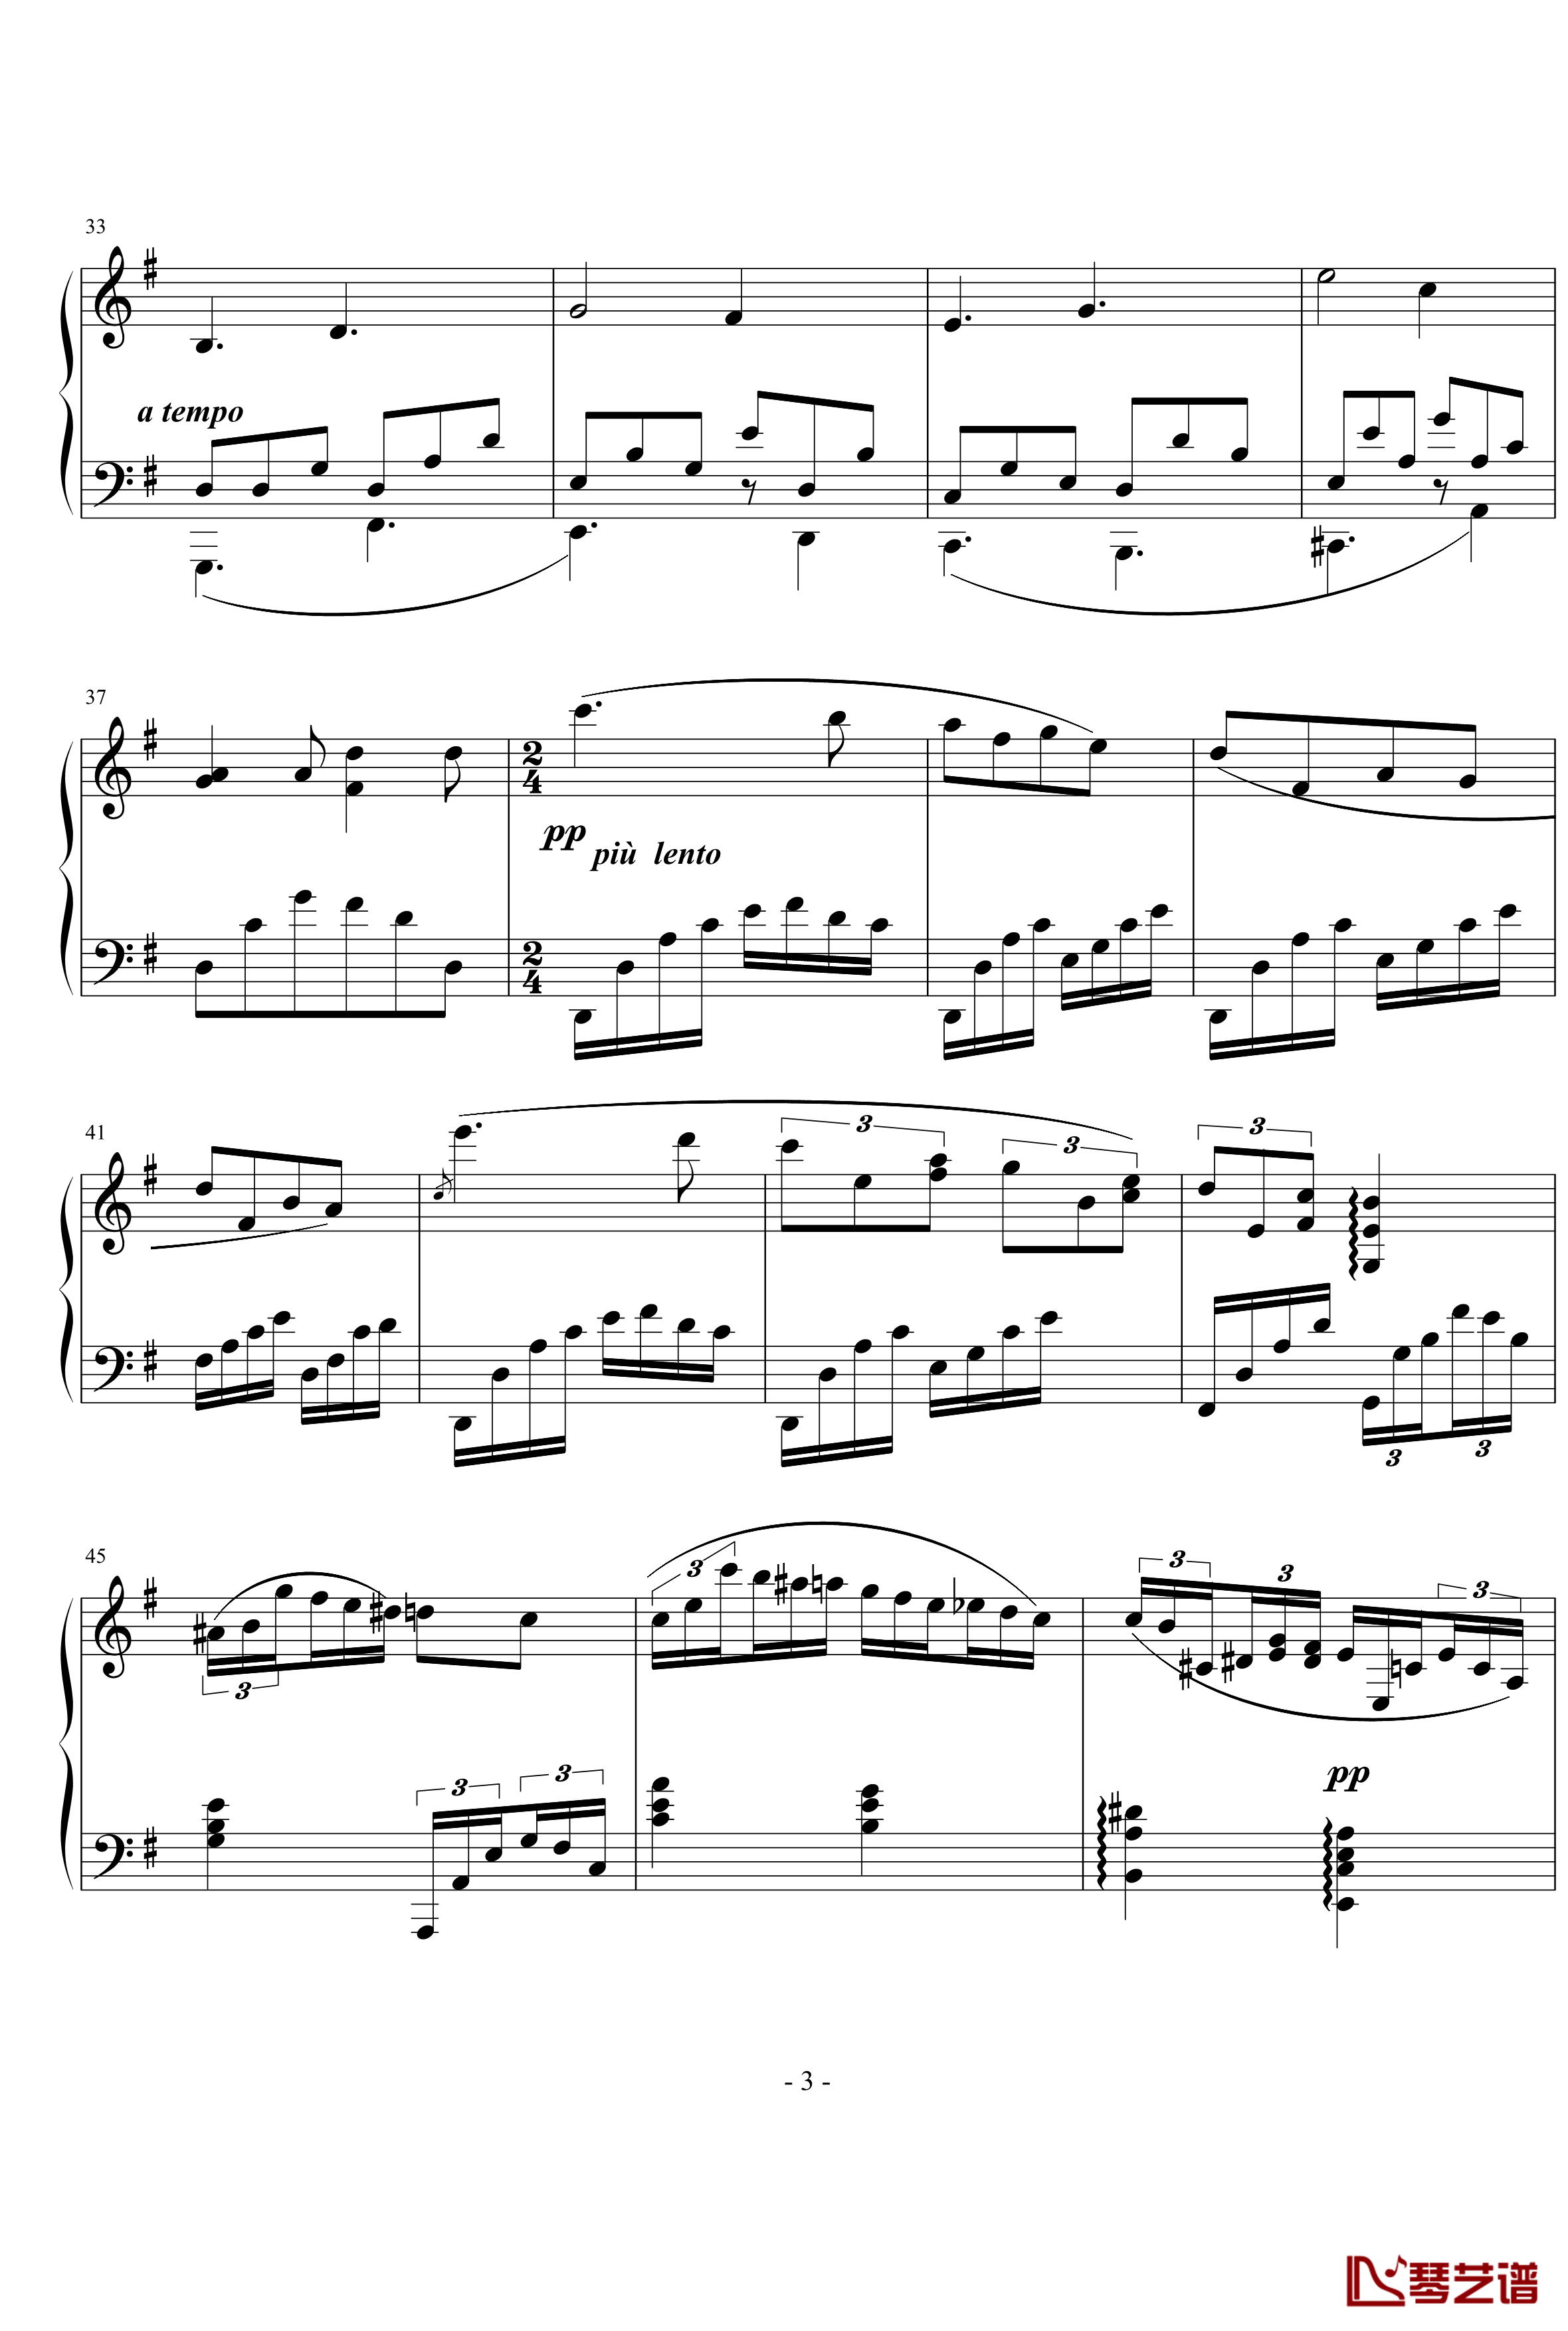 幻想曲钢琴谱-nyride3